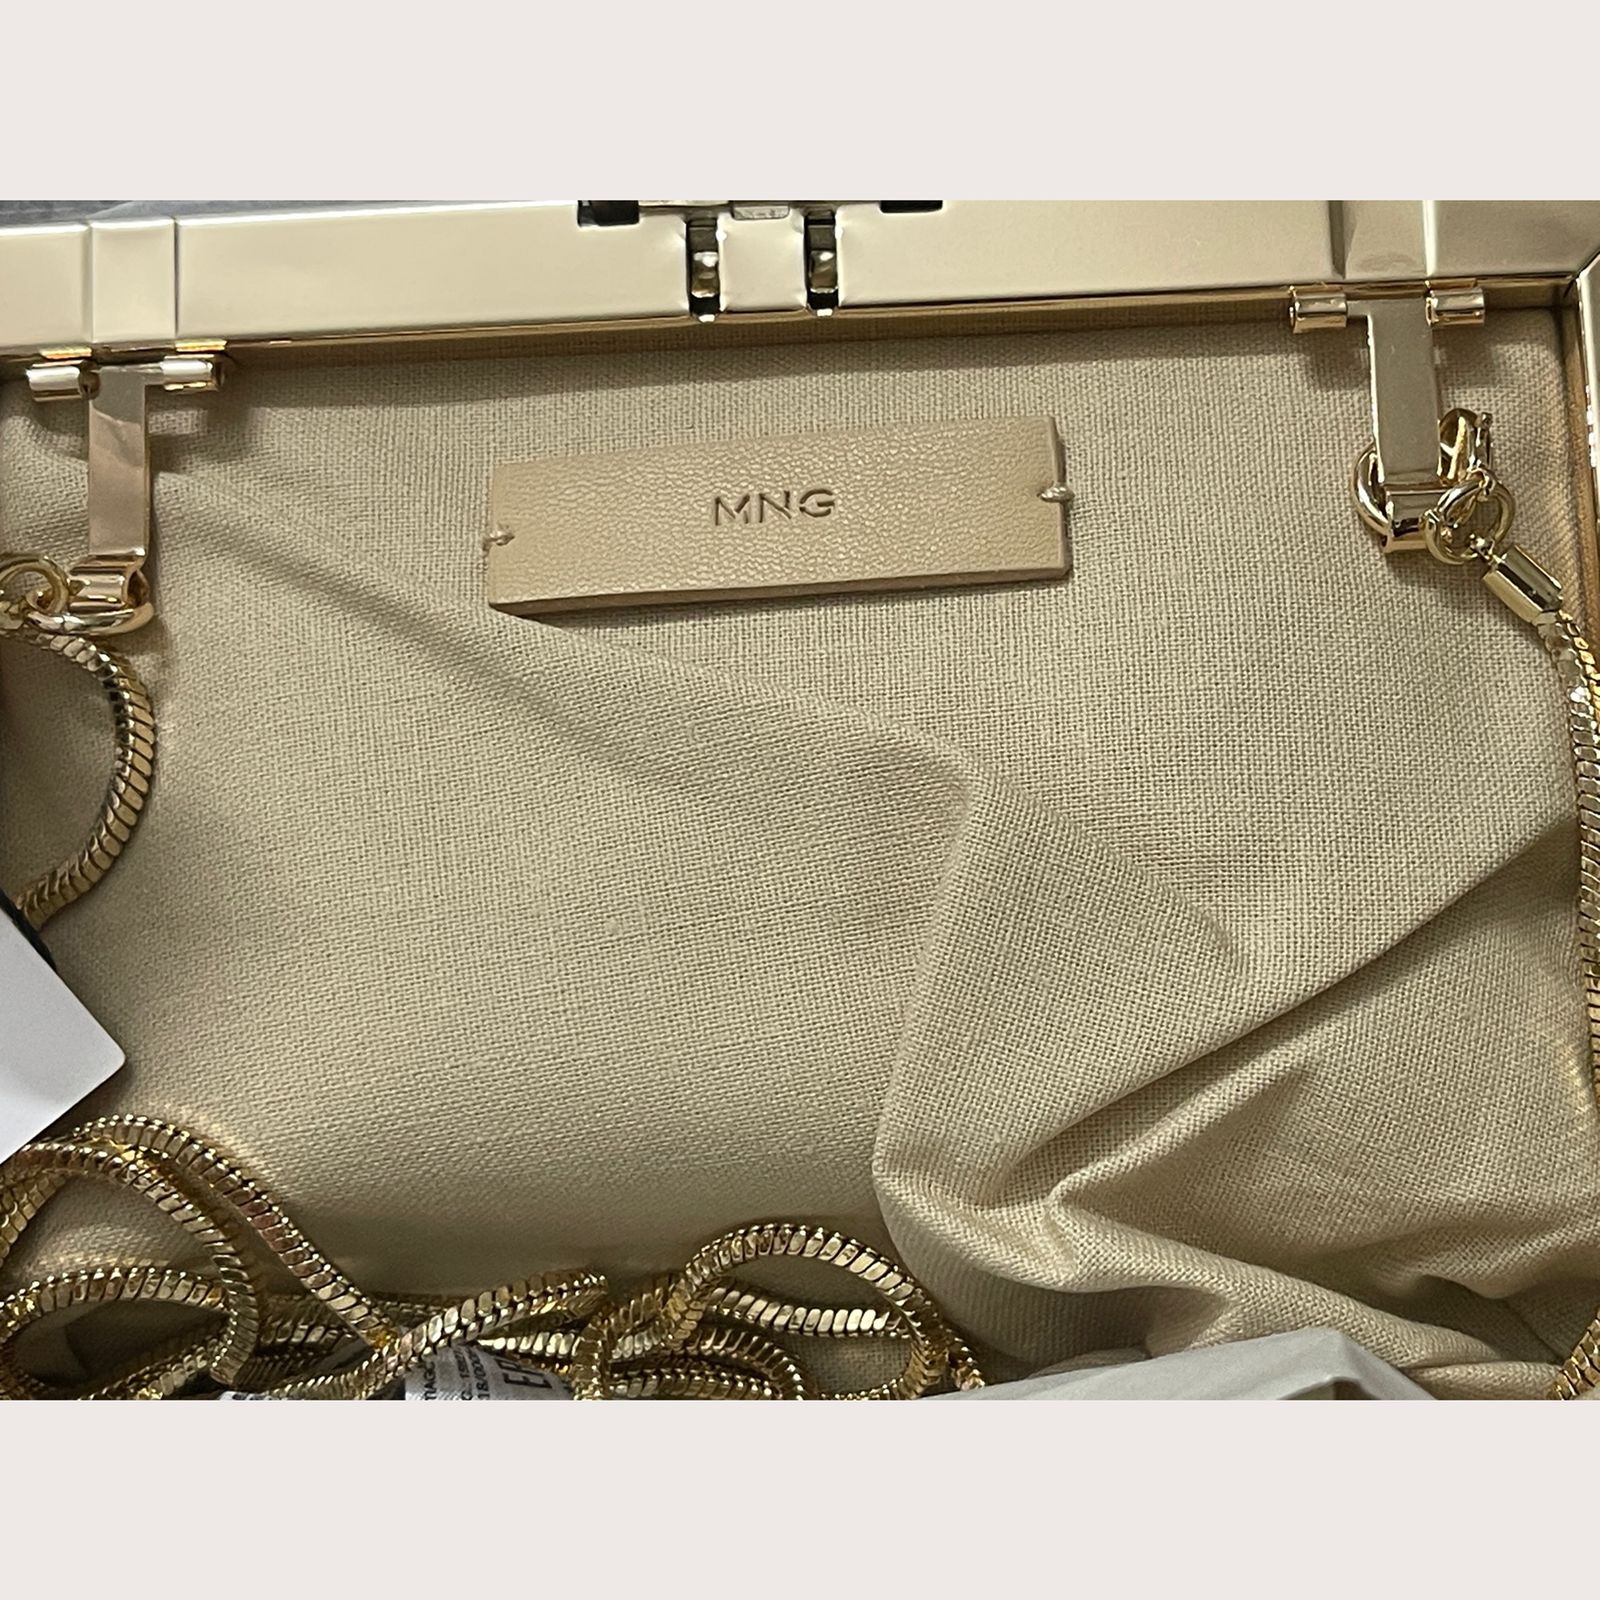 کیف دوشی زنانه مانگو مدل 47085855 -  - 2